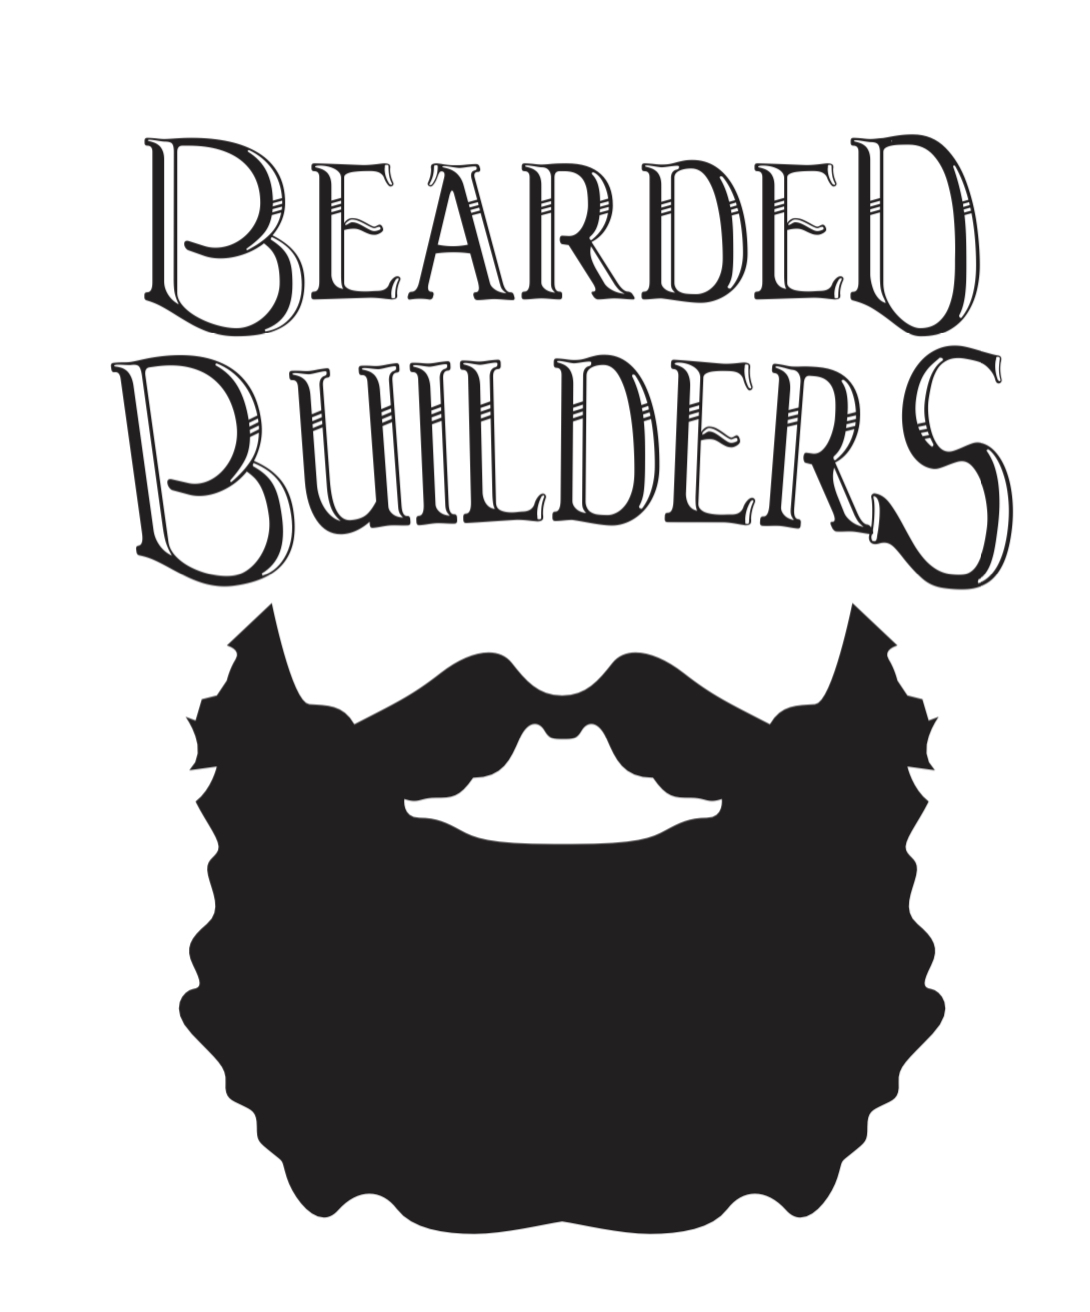 Bearded Builders logo